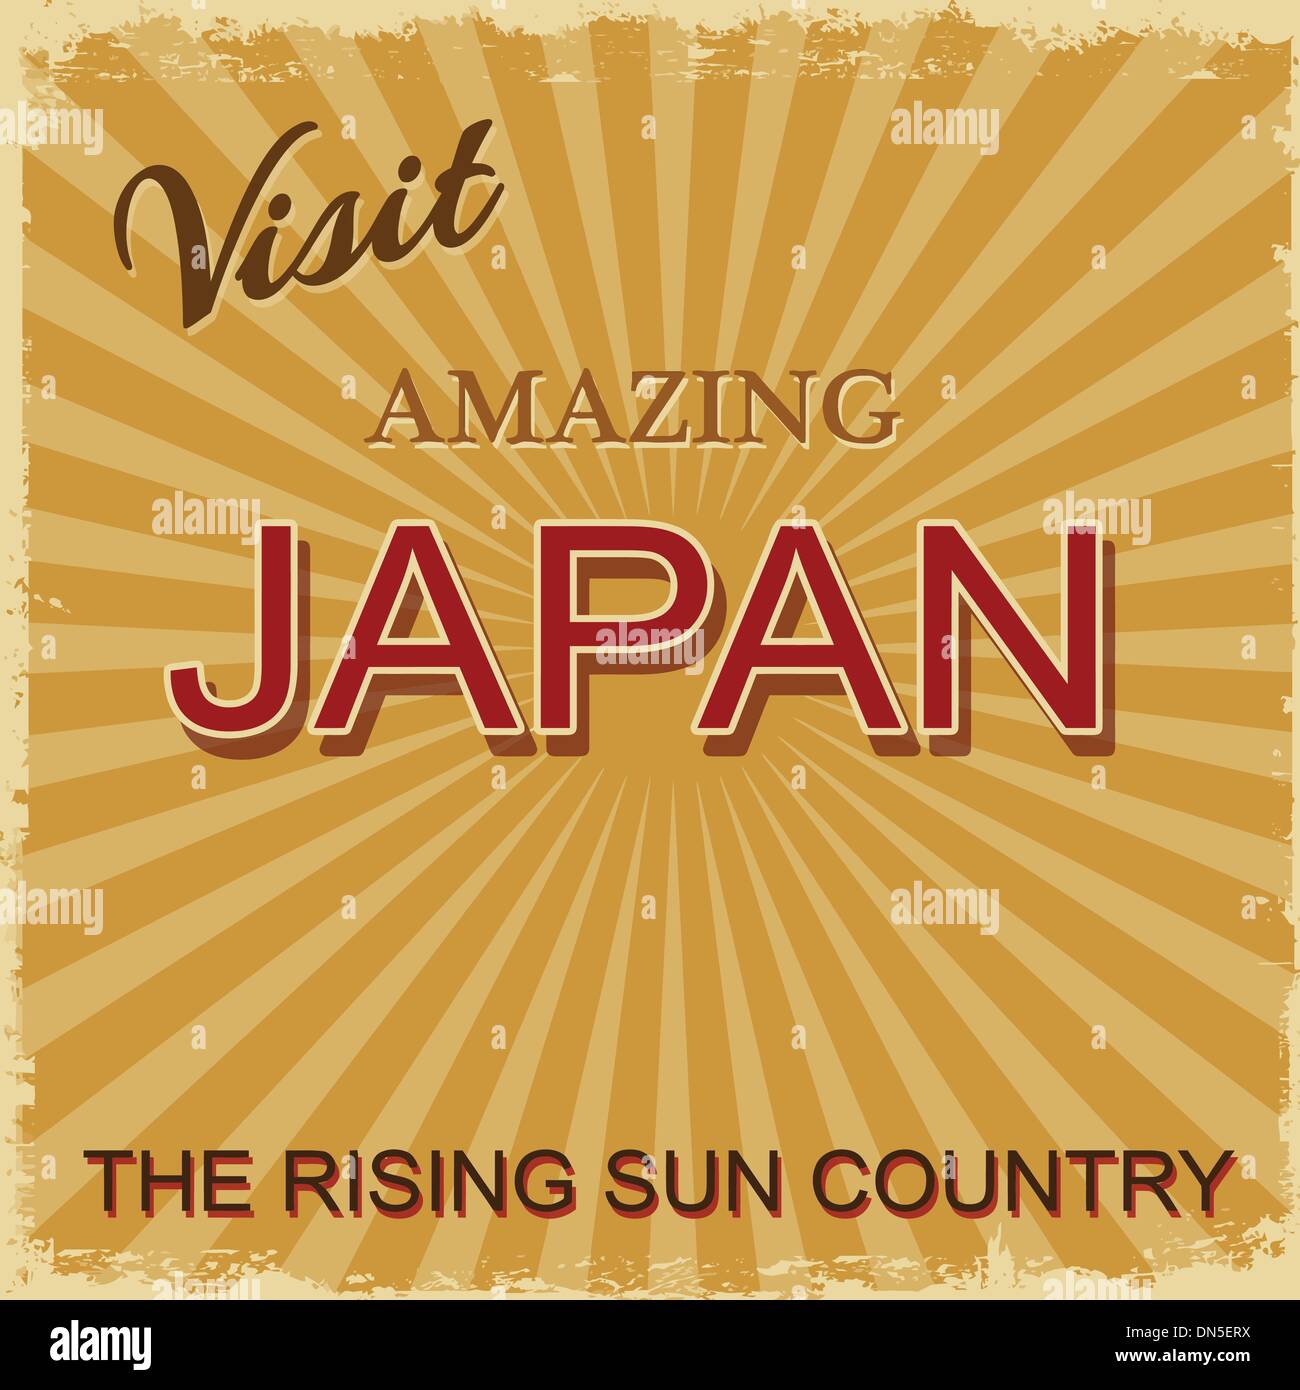 Vintage poster touristique - Japon Illustration de Vecteur